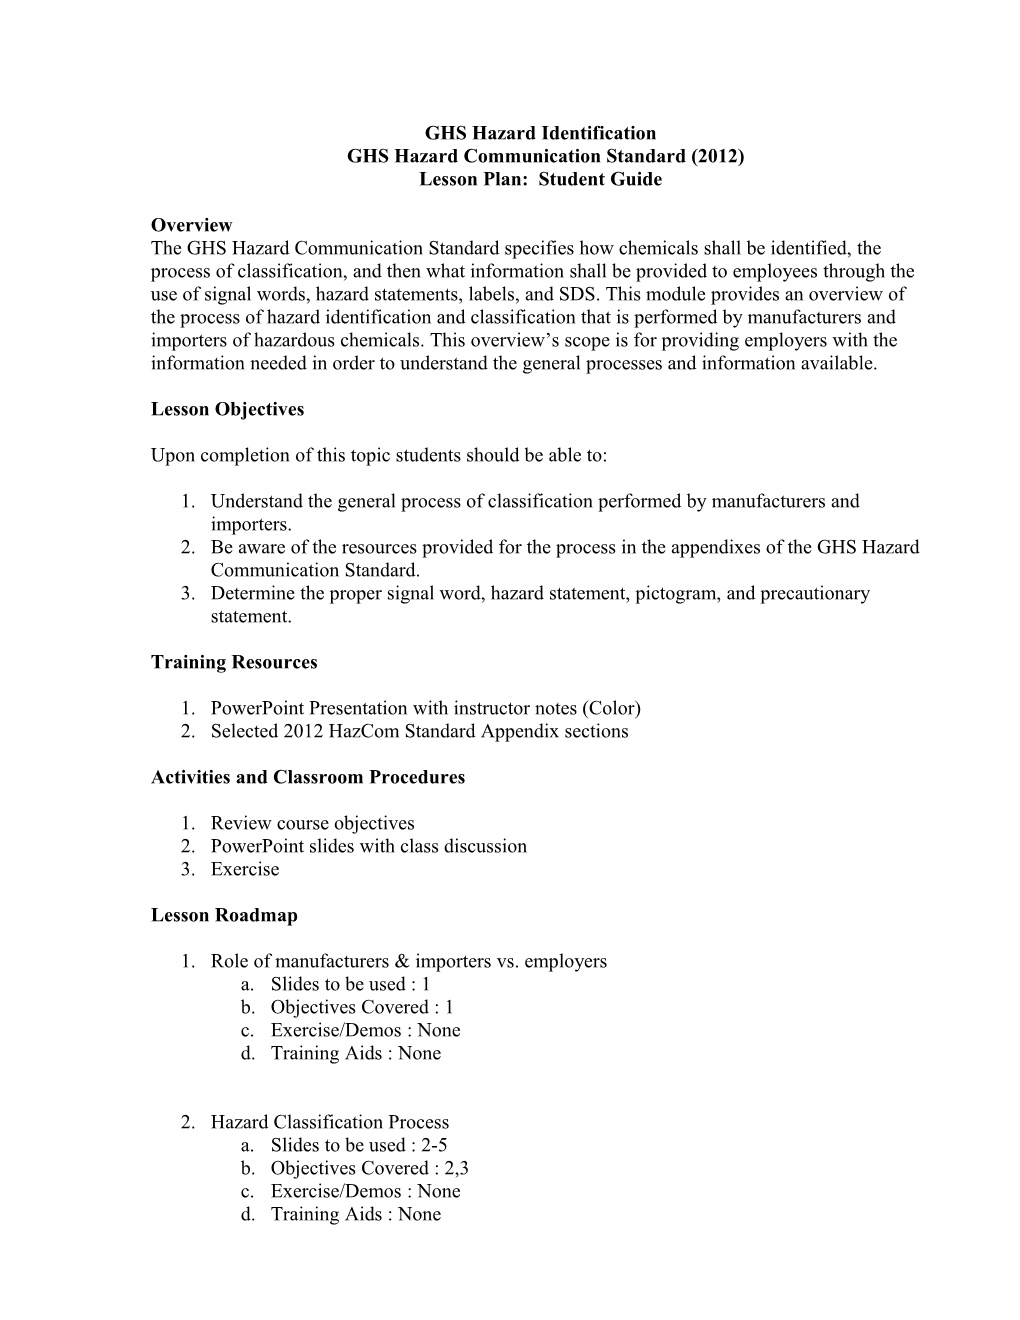 GHS Hazard Communication Standard (2012)